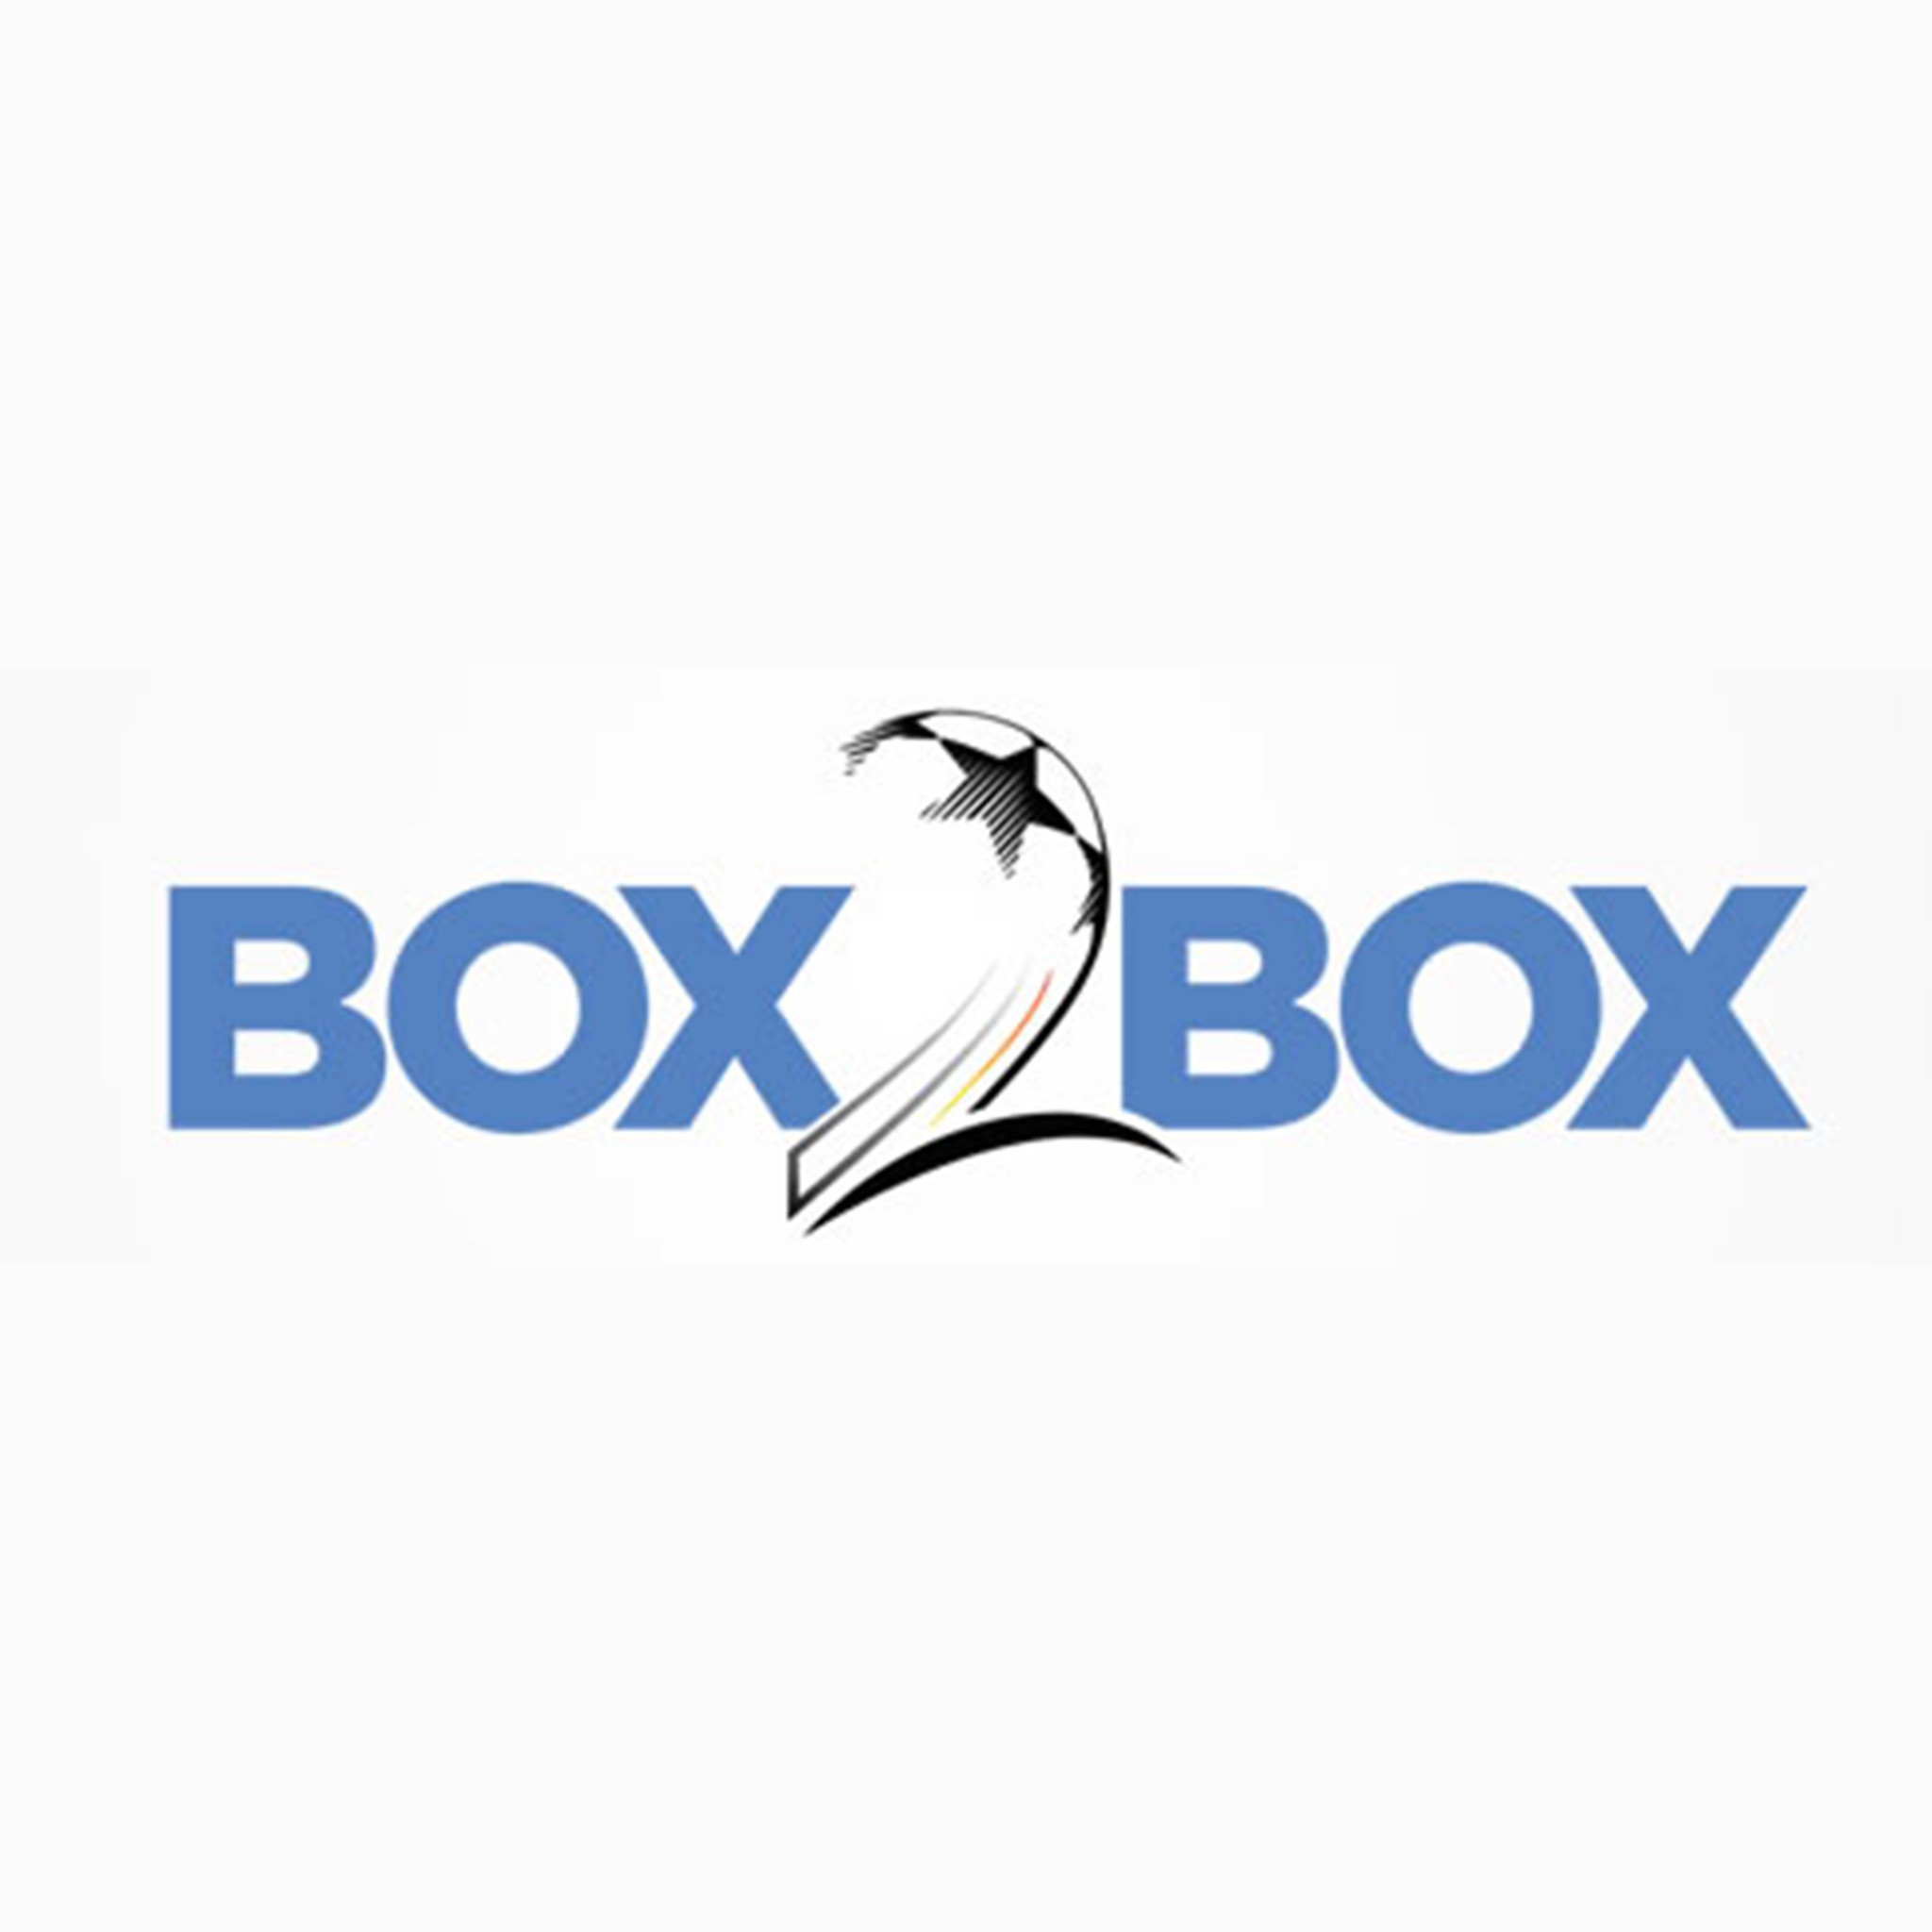 Box2Box Friday 27th May 2022 - A-League GF preview, Martin Tyler's Premier League wrap, Aussies win European silverware